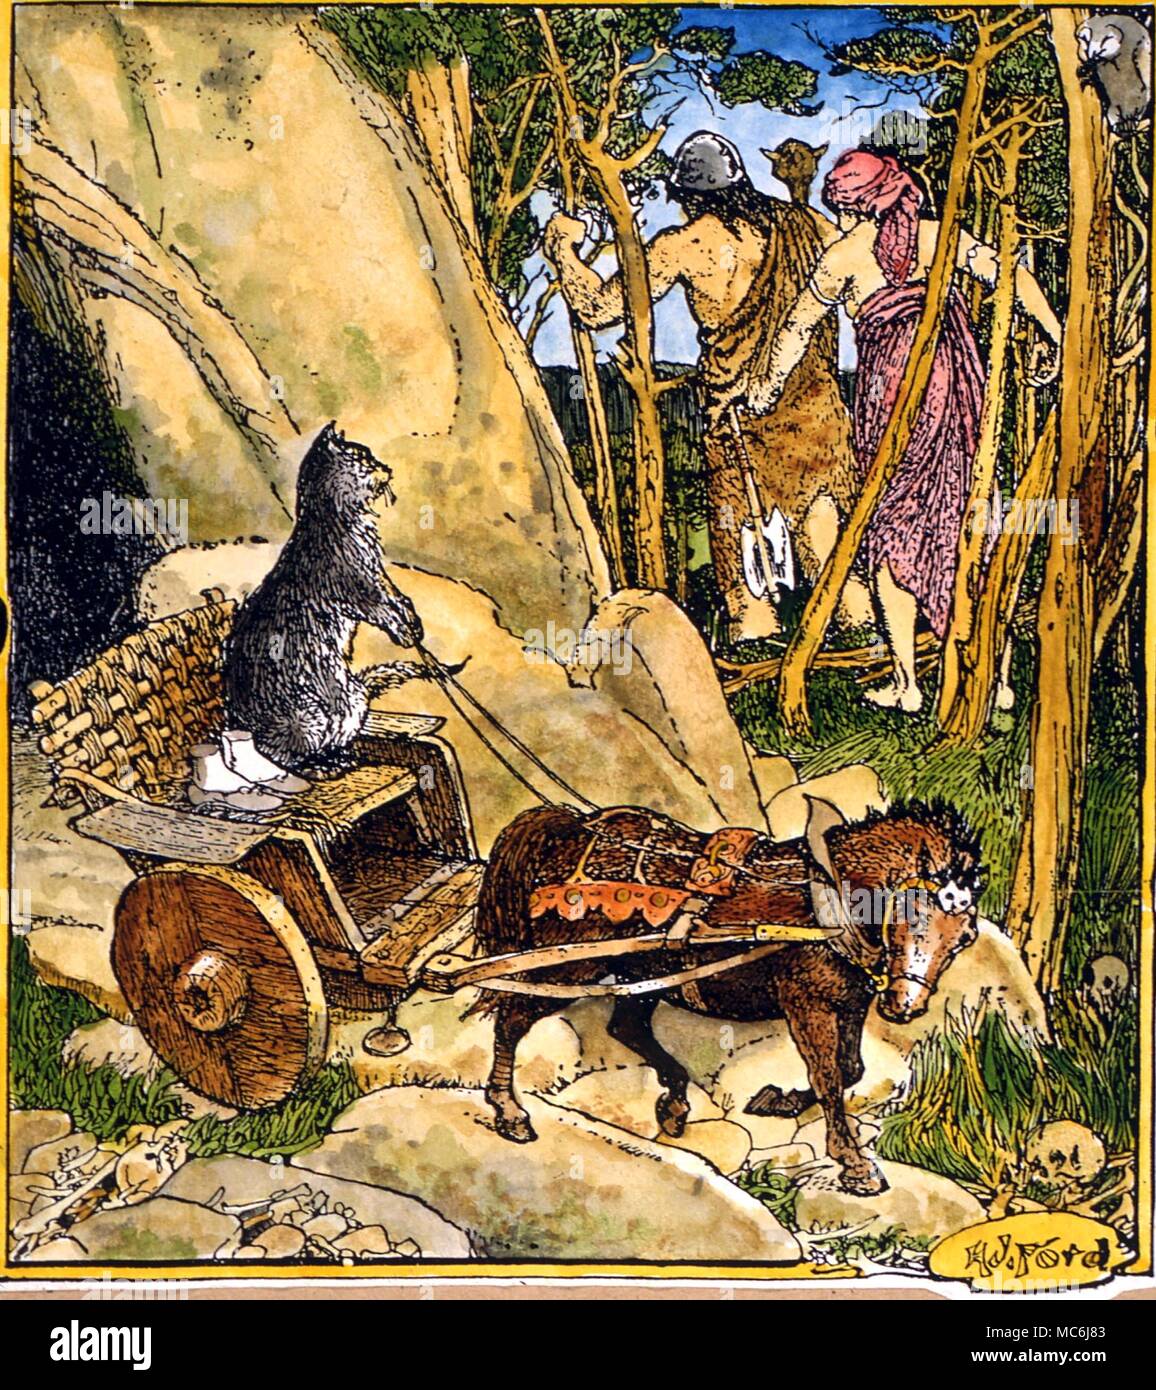 Contes - kisa le chat fait sortir l'Ingibjorg pieds de la grotte du géant. Illustration par H J Ford pour 'Kisa le chat', de Andrew Lang's 'Livre de fée brune, 1930 Banque D'Images